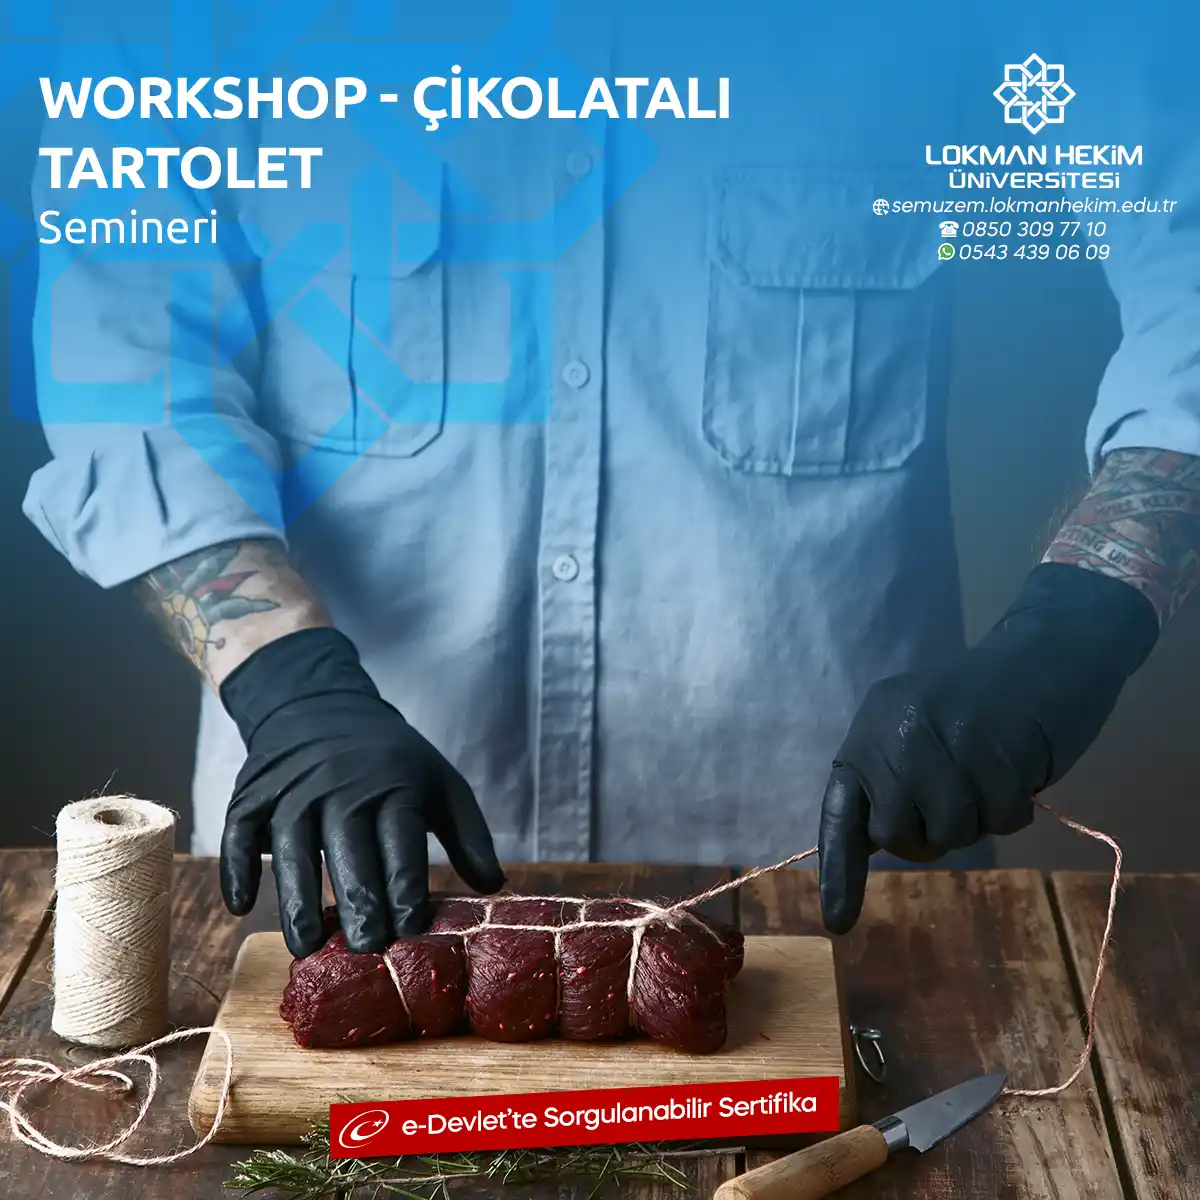 Workshop - Çikolatalı Tartolet Semineri